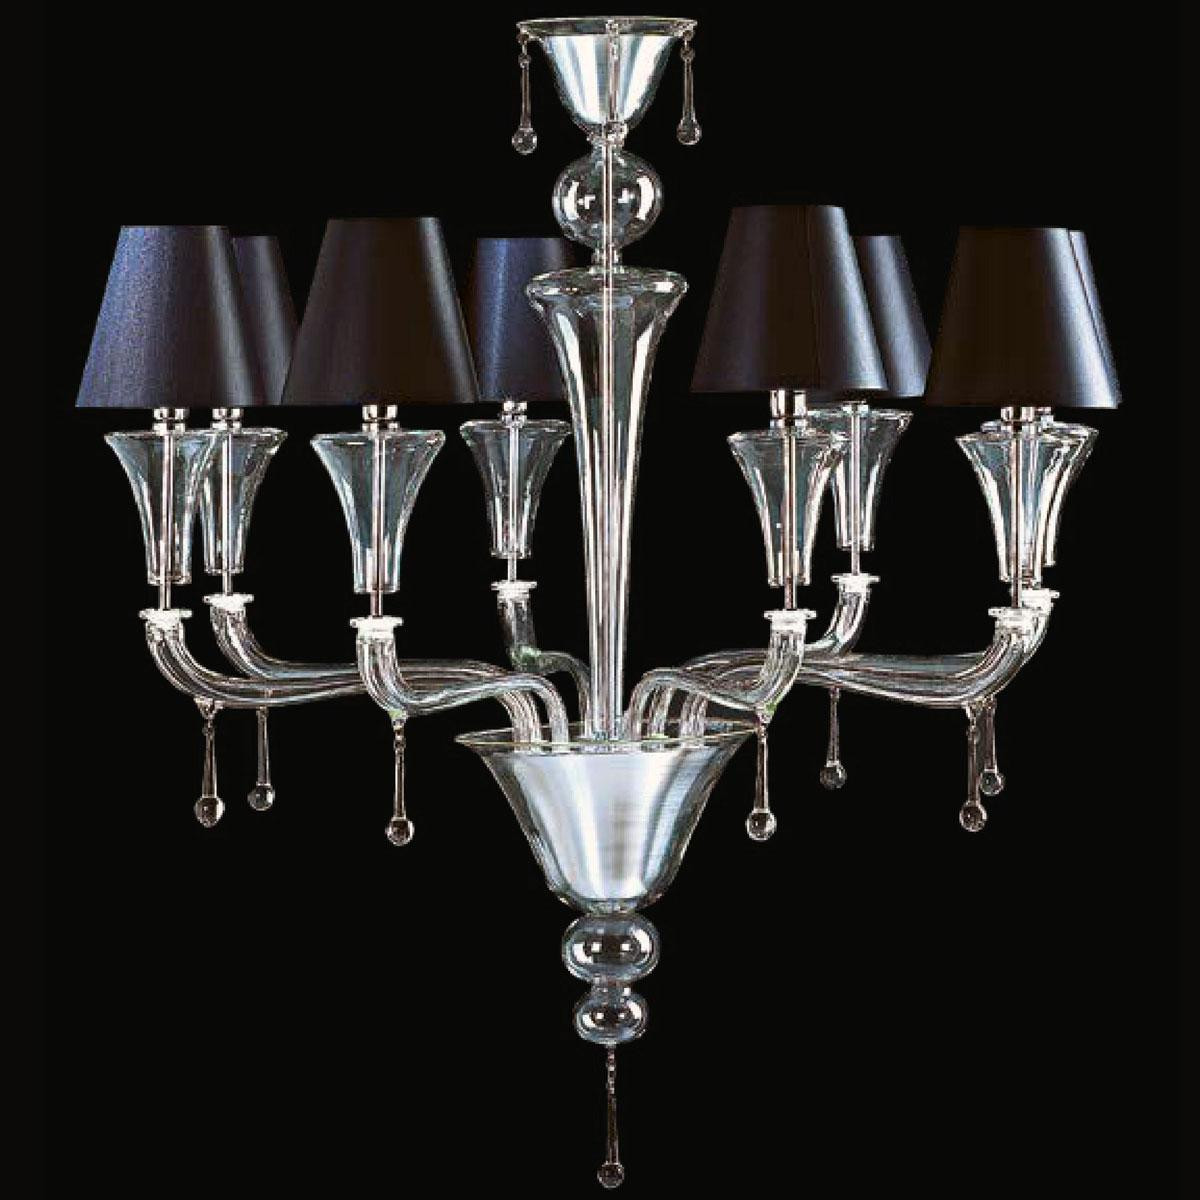 "Elliott" Murano glas Kronleuchter mit lampenschirmen - 8 flammig - transparent